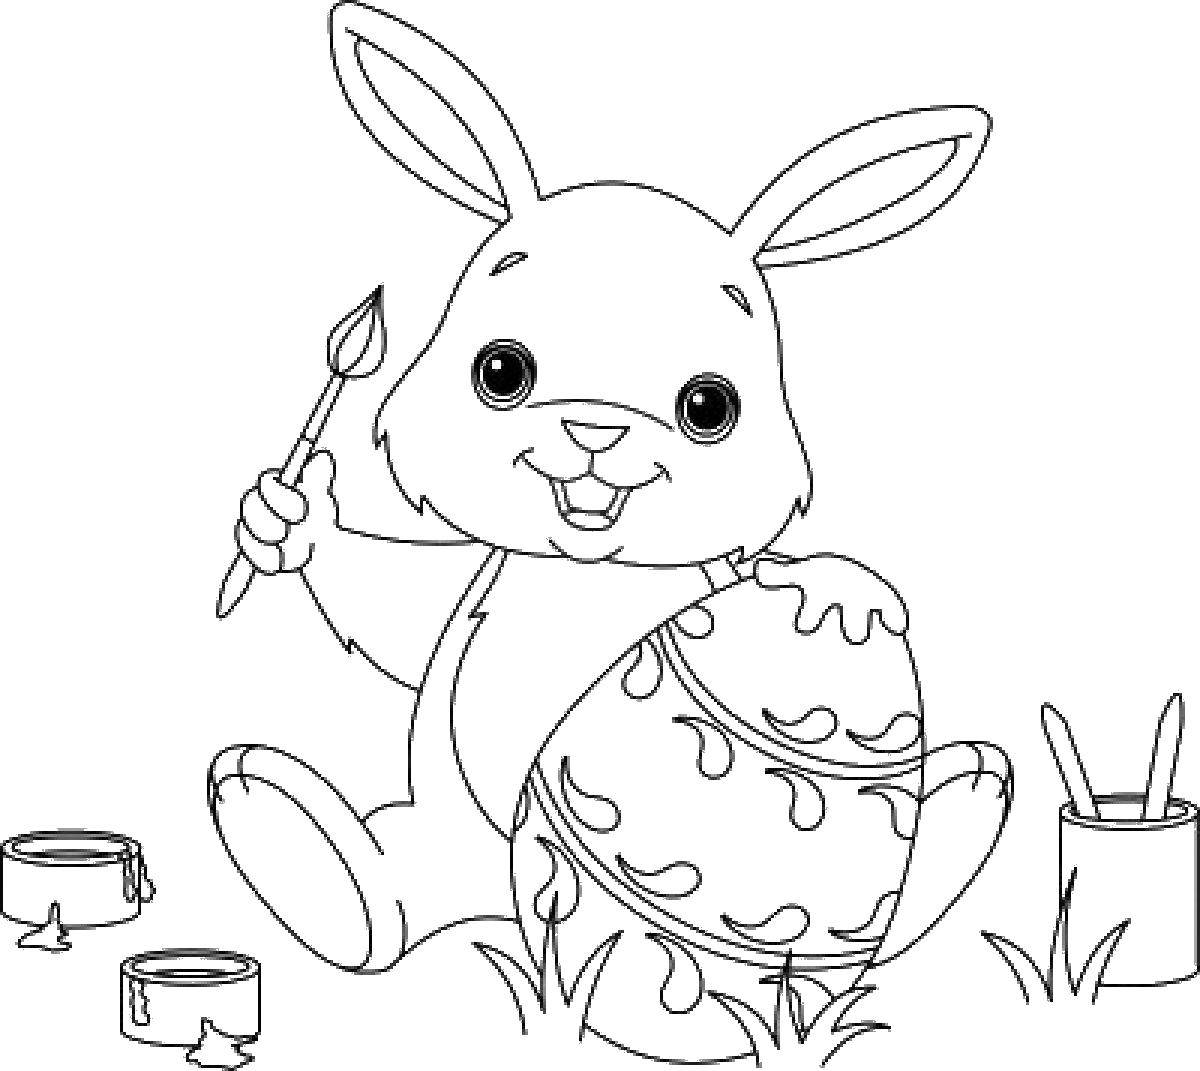 Название: Раскраска Кролик раскрашивает яйцо. Категория: пасха. Теги: Пасха, праздник, яйцо, кролик.